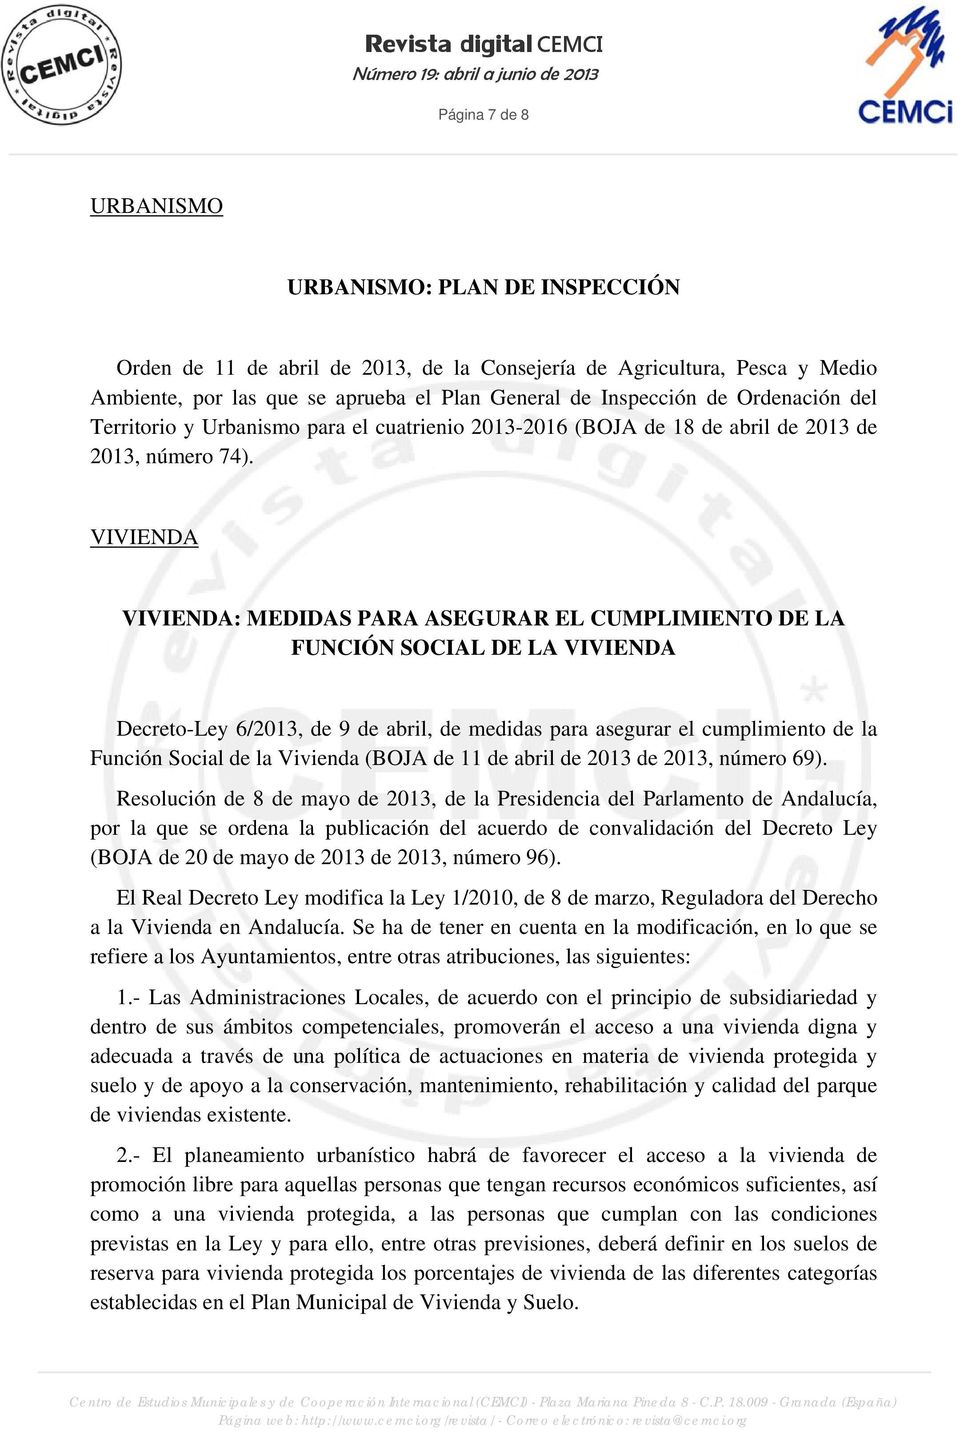 VIVIENDA VIVIENDA: MEDIDAS PARA ASEGURAR EL CUMPLIMIENTO DE LA FUNCIÓN SOCIAL DE LA VIVIENDA Decreto-Ley 6/2013, de 9 de abril, de medidas para asegurar el cumplimiento de la Función Social de la